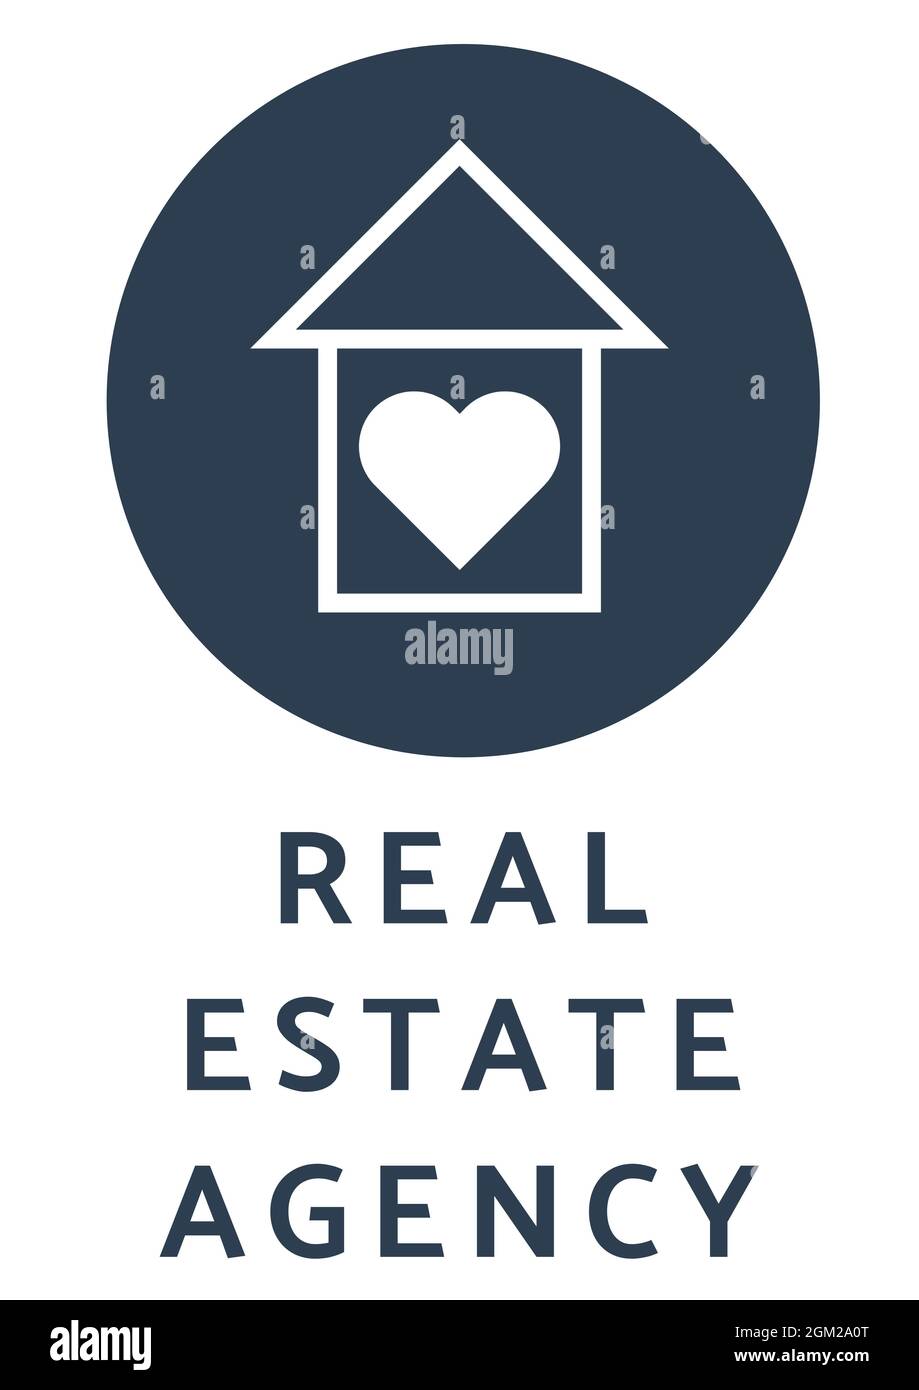 Texte de l'agence immobilière avec une icône maison en coeur sur fond blanc Banque D'Images